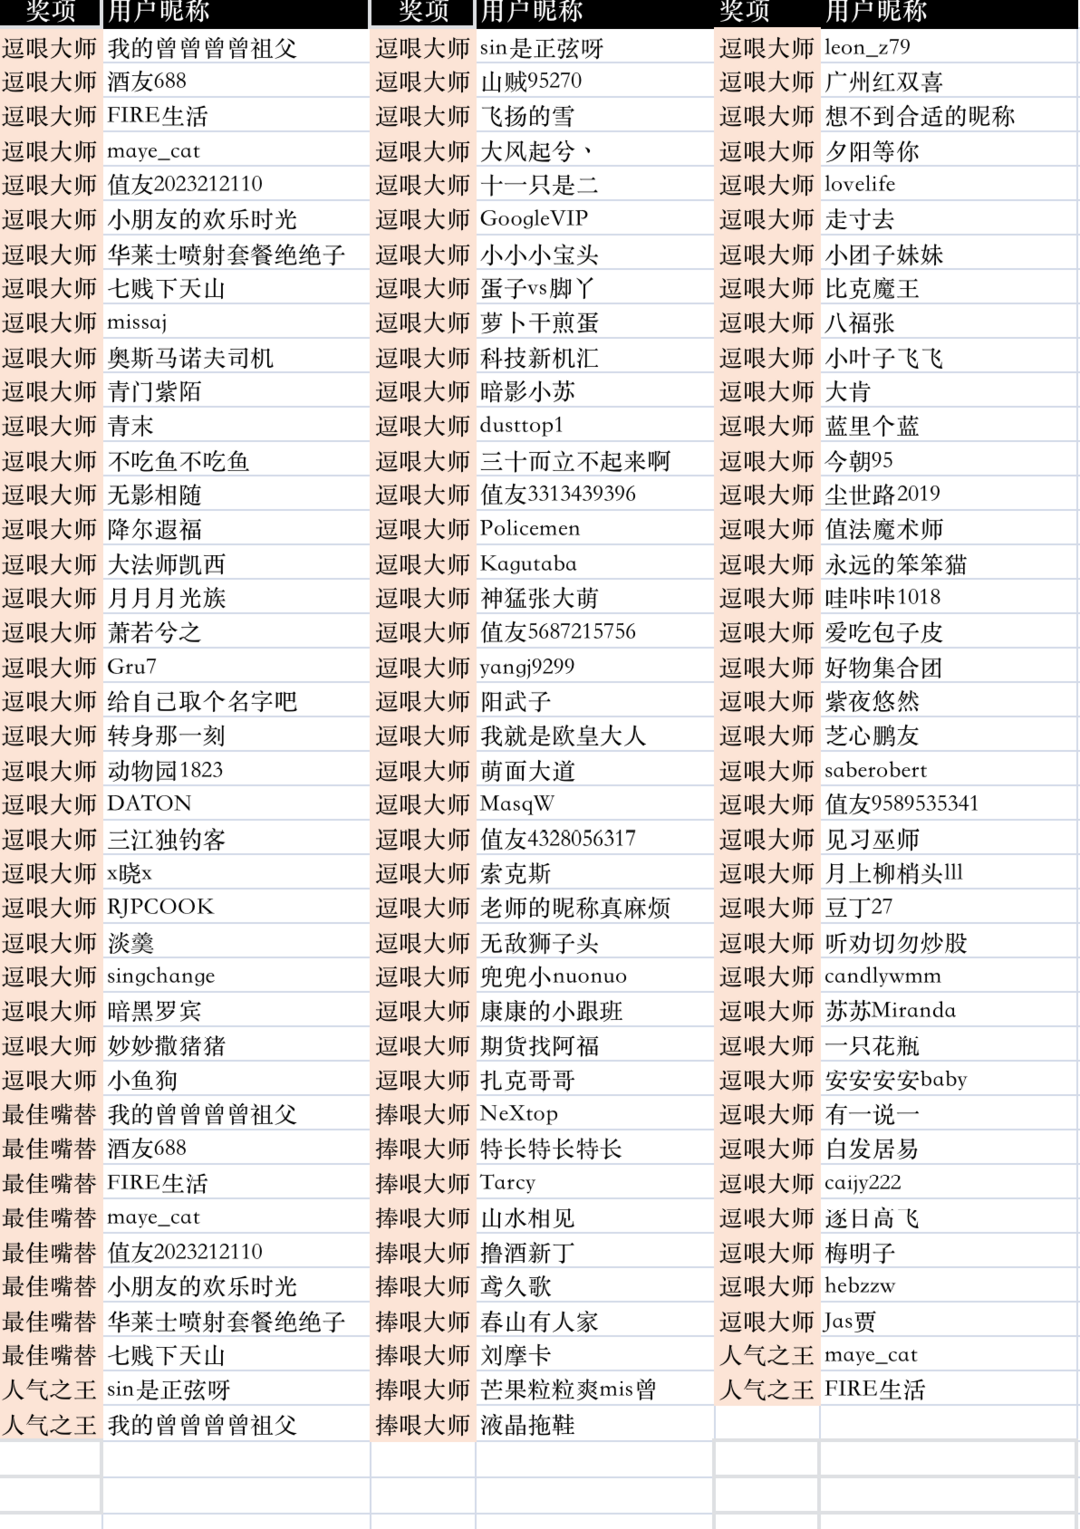 名单公示｜春节前后多个评论活动中奖名单公示